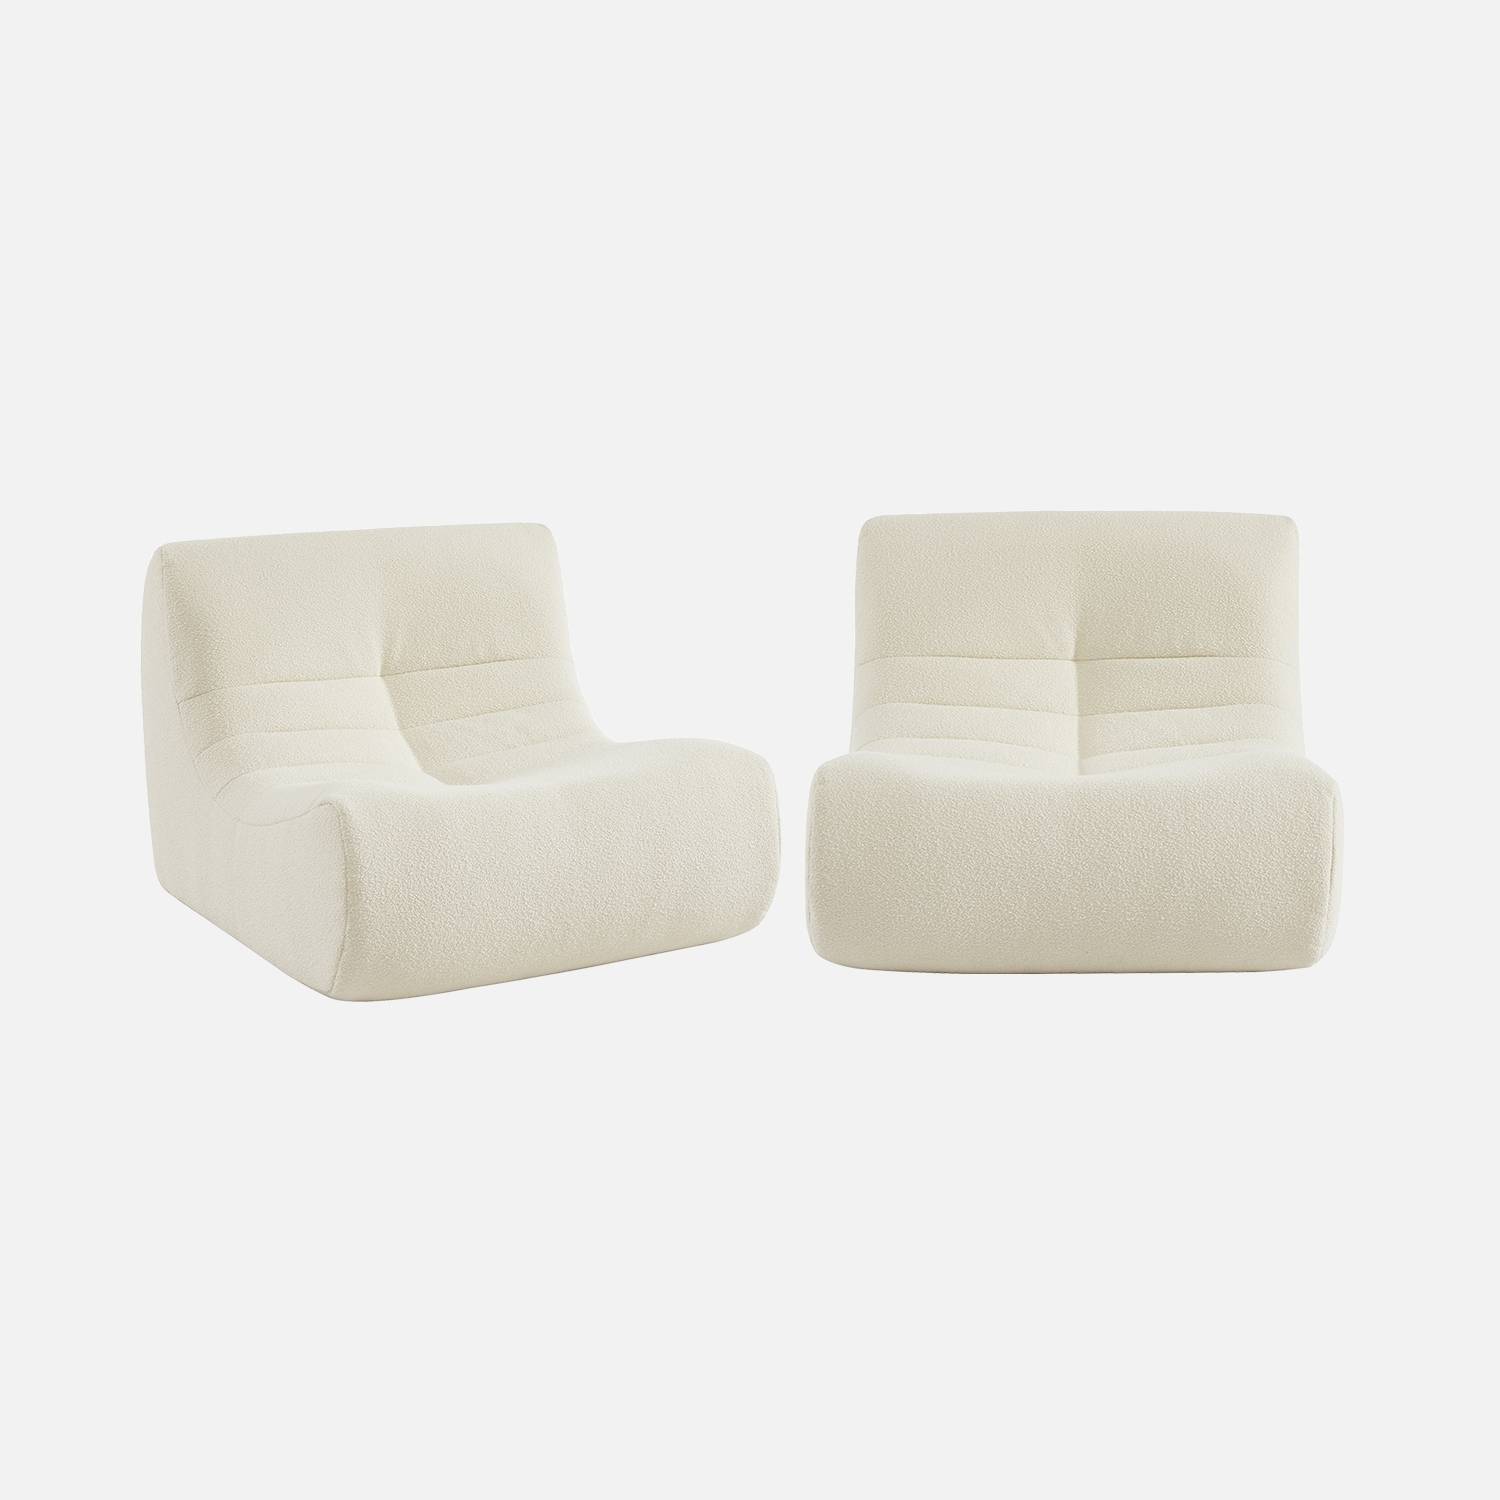 2 bouclé fauteuils met witte textuur I sweeek